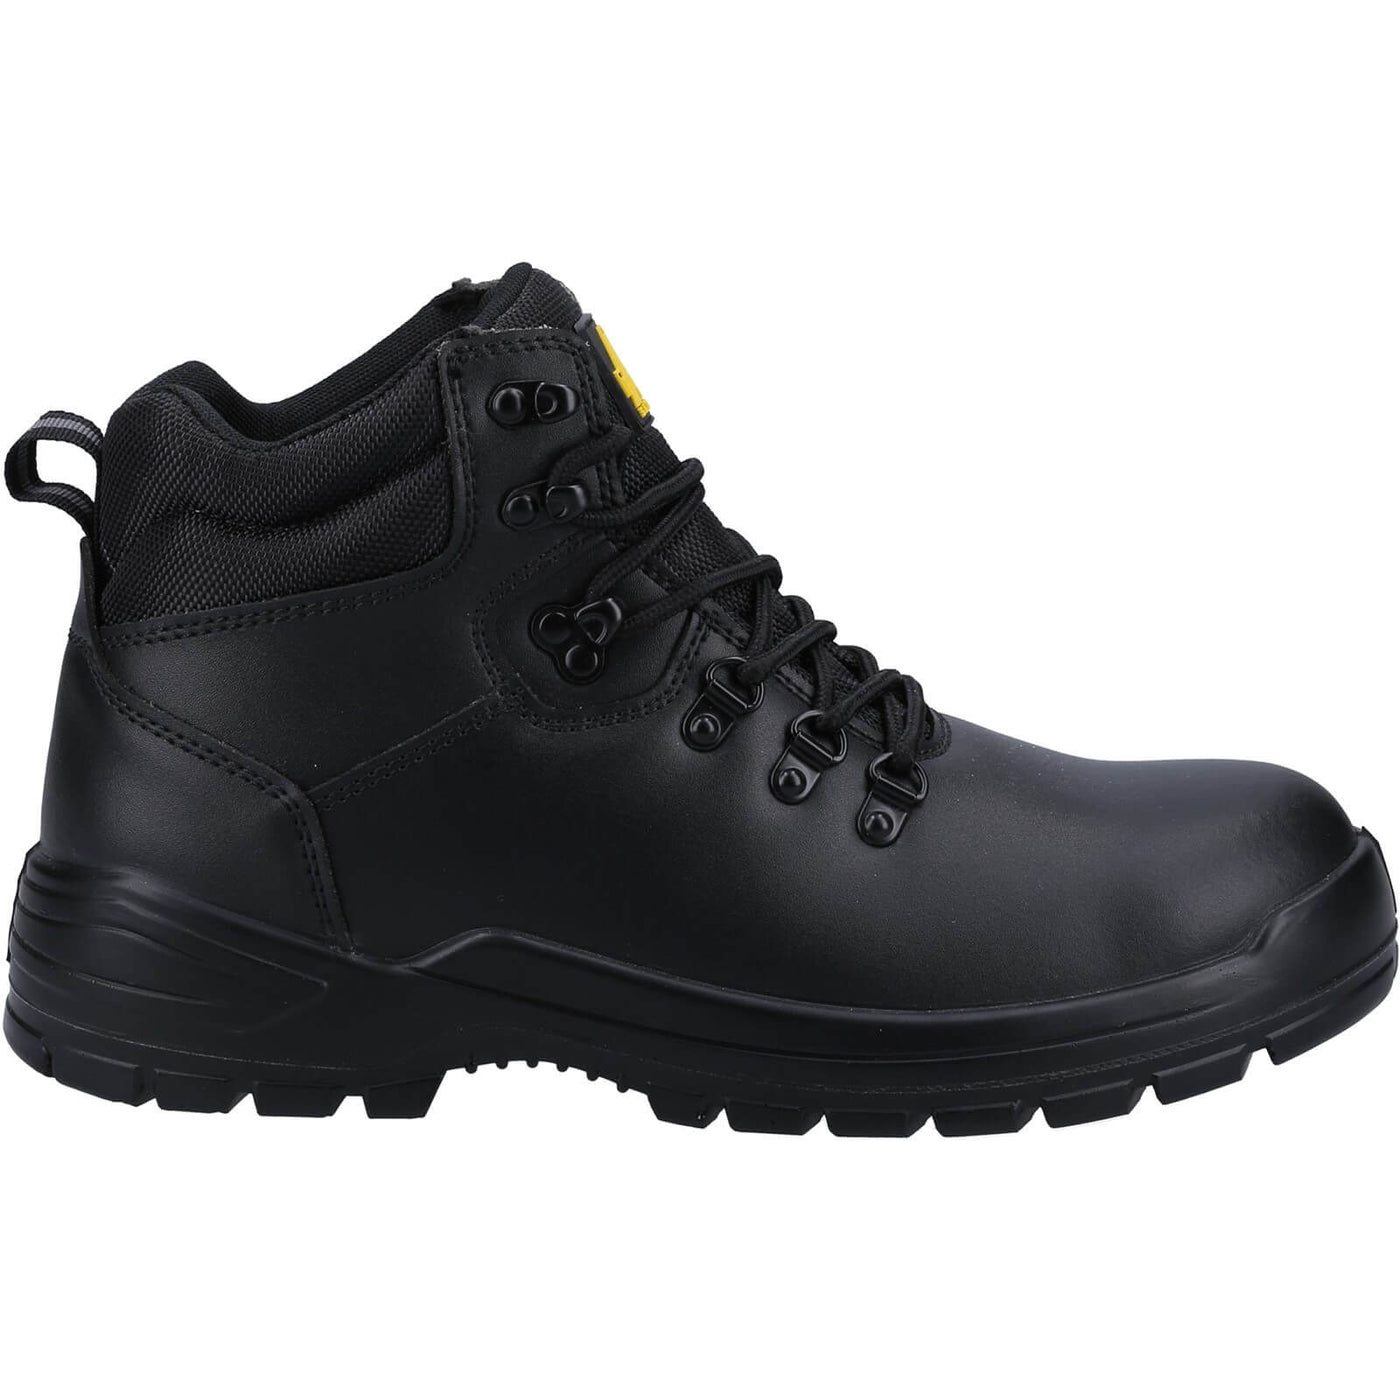 Amblers 258 Safety Boots Black 4#colour_black